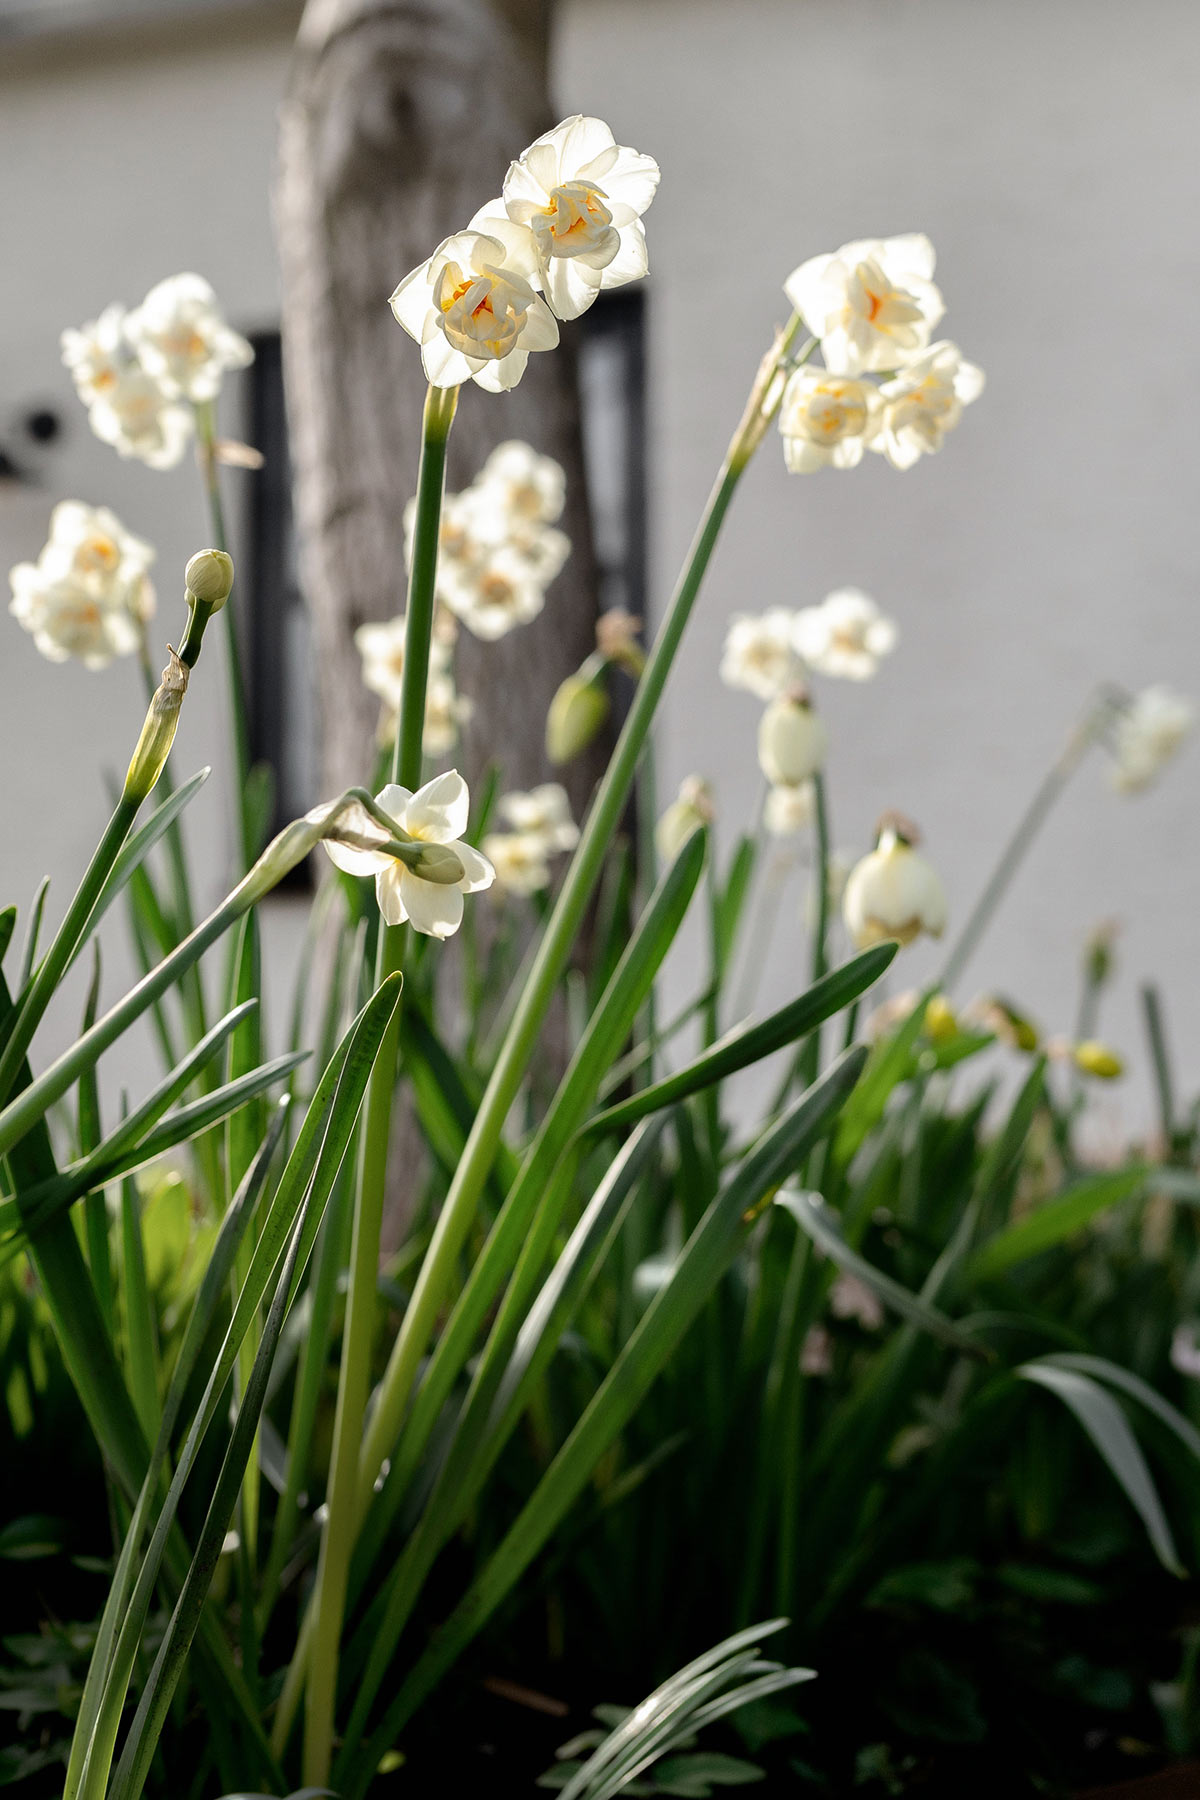 Tuin in maart - Narcis Bridal Crown - Tanja van Hoogdalem